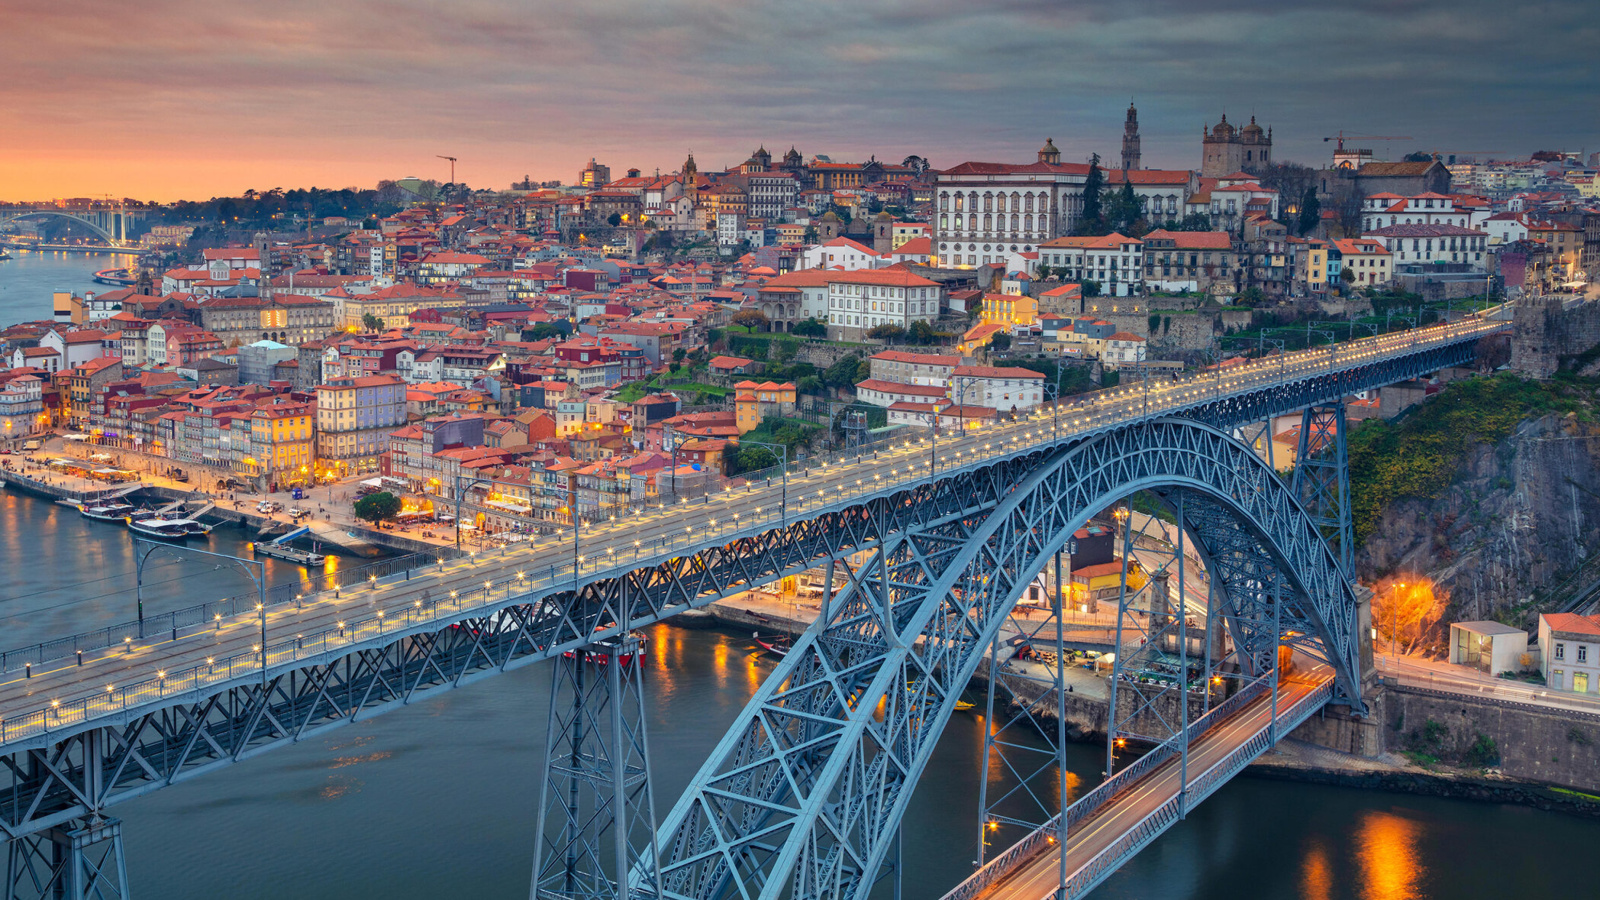 Обои Dom Luis I Bridge in Porto 1600x900